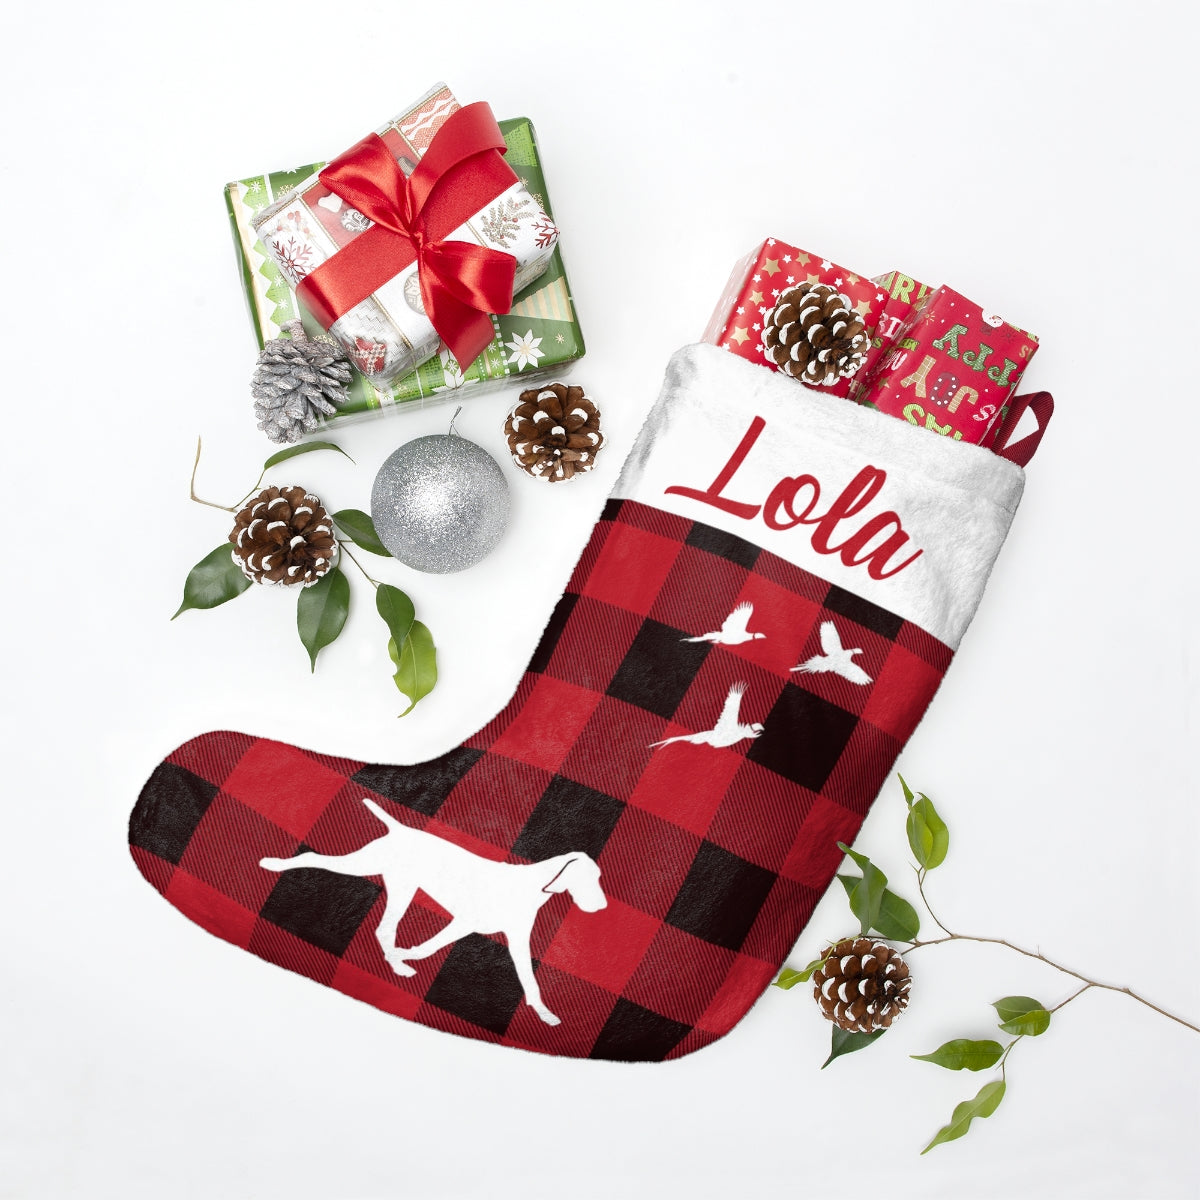 Lola Christmas Stockings